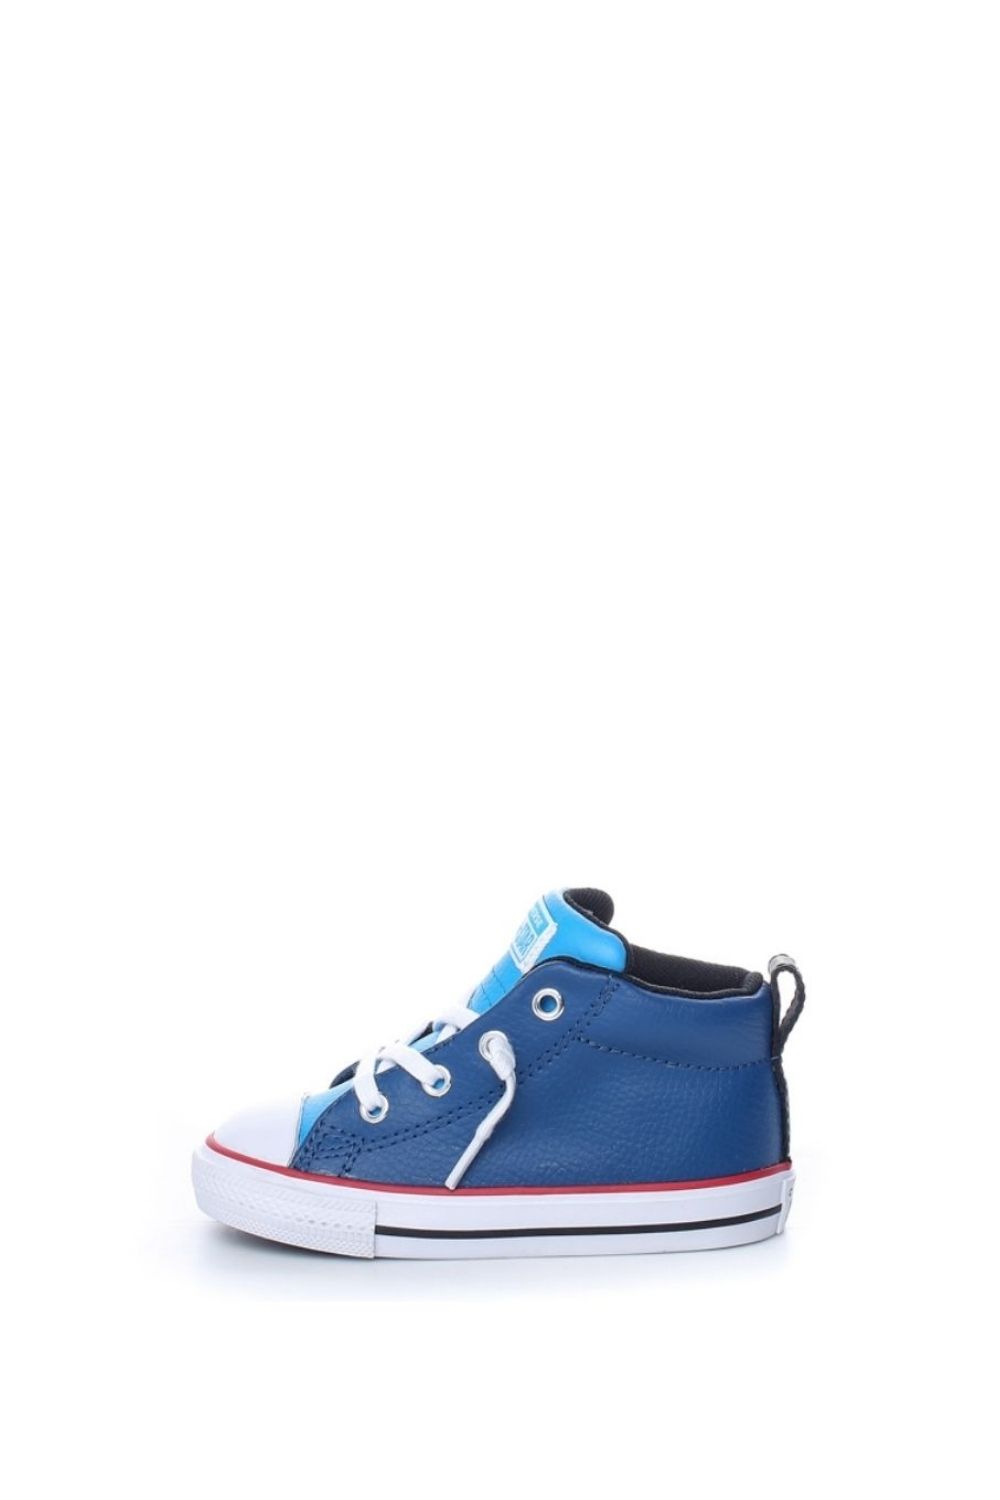 Παιδικά/Baby/Παπούτσια/Sneakers CONVERSE - Βρεφικά ψηλά sneakers CONVERSE Chuck Taylor All Star Street μπλε